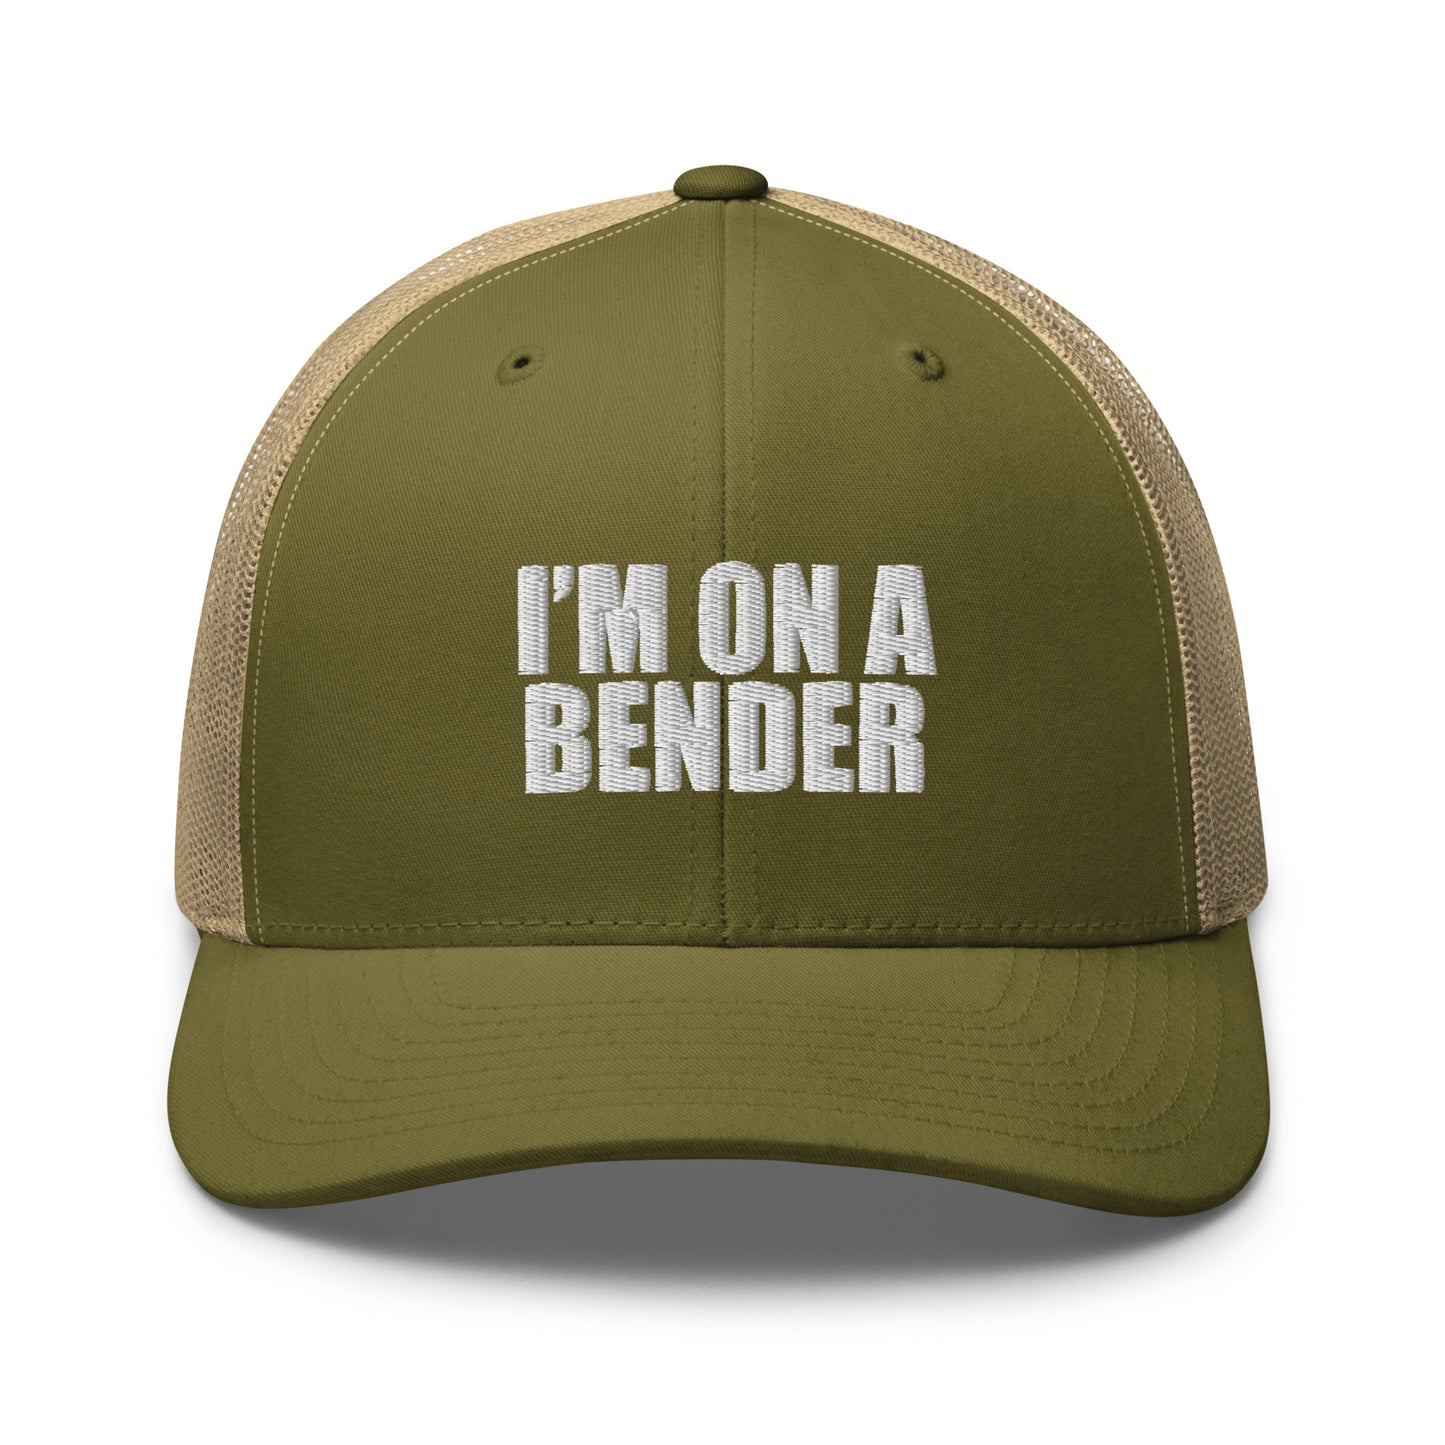 Bender - Trucker Cap